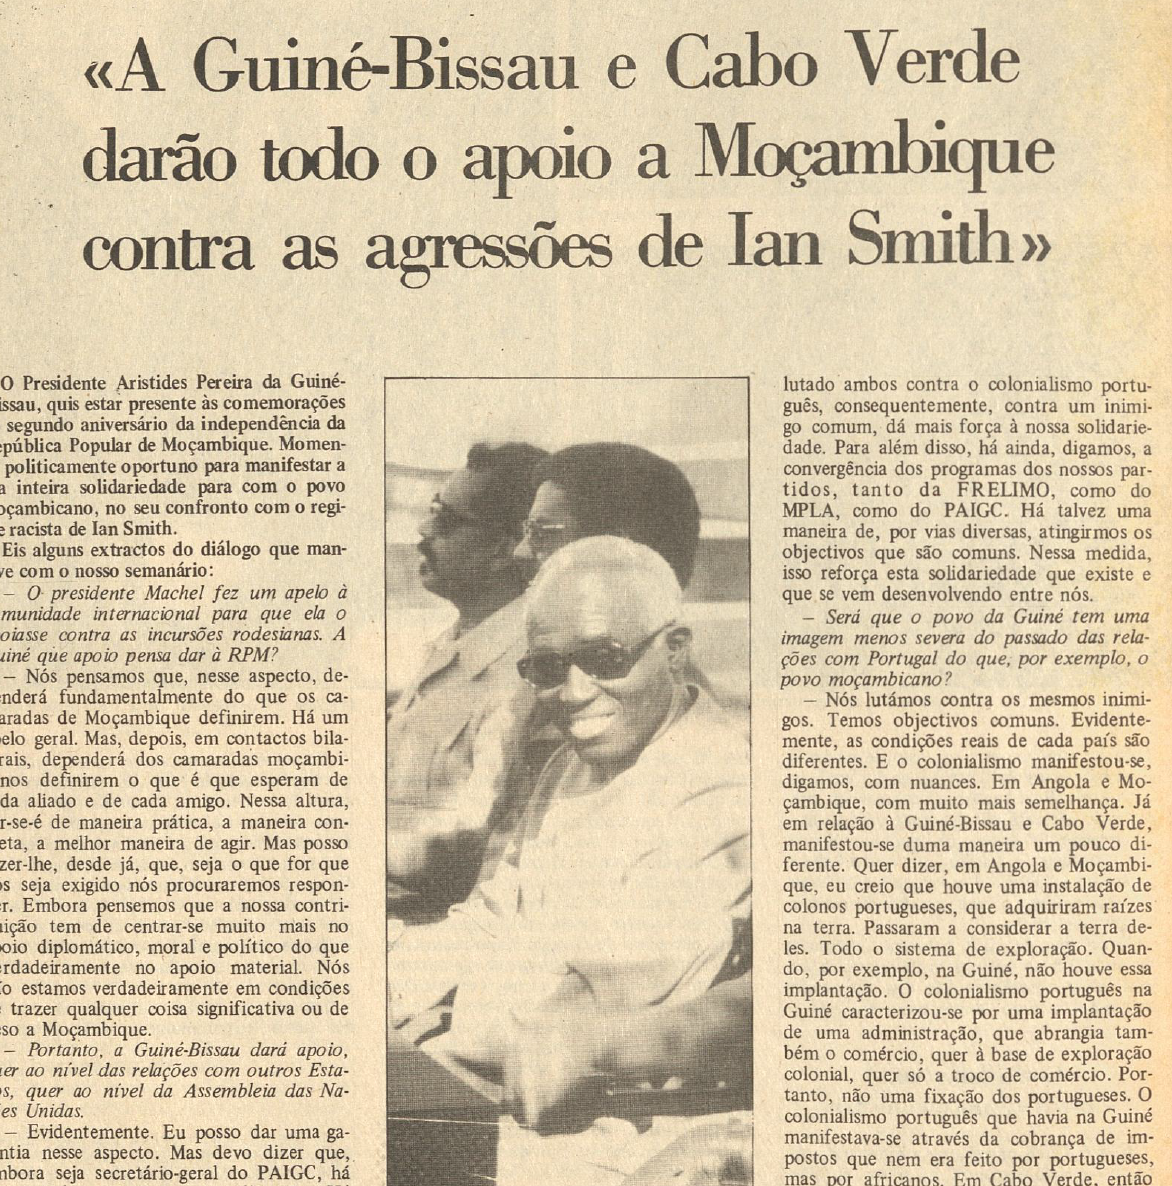 "A Guiné-Bissau e Cabo Verde darão todo o apoio a Moçambique contra as agressões de Ian Smith"